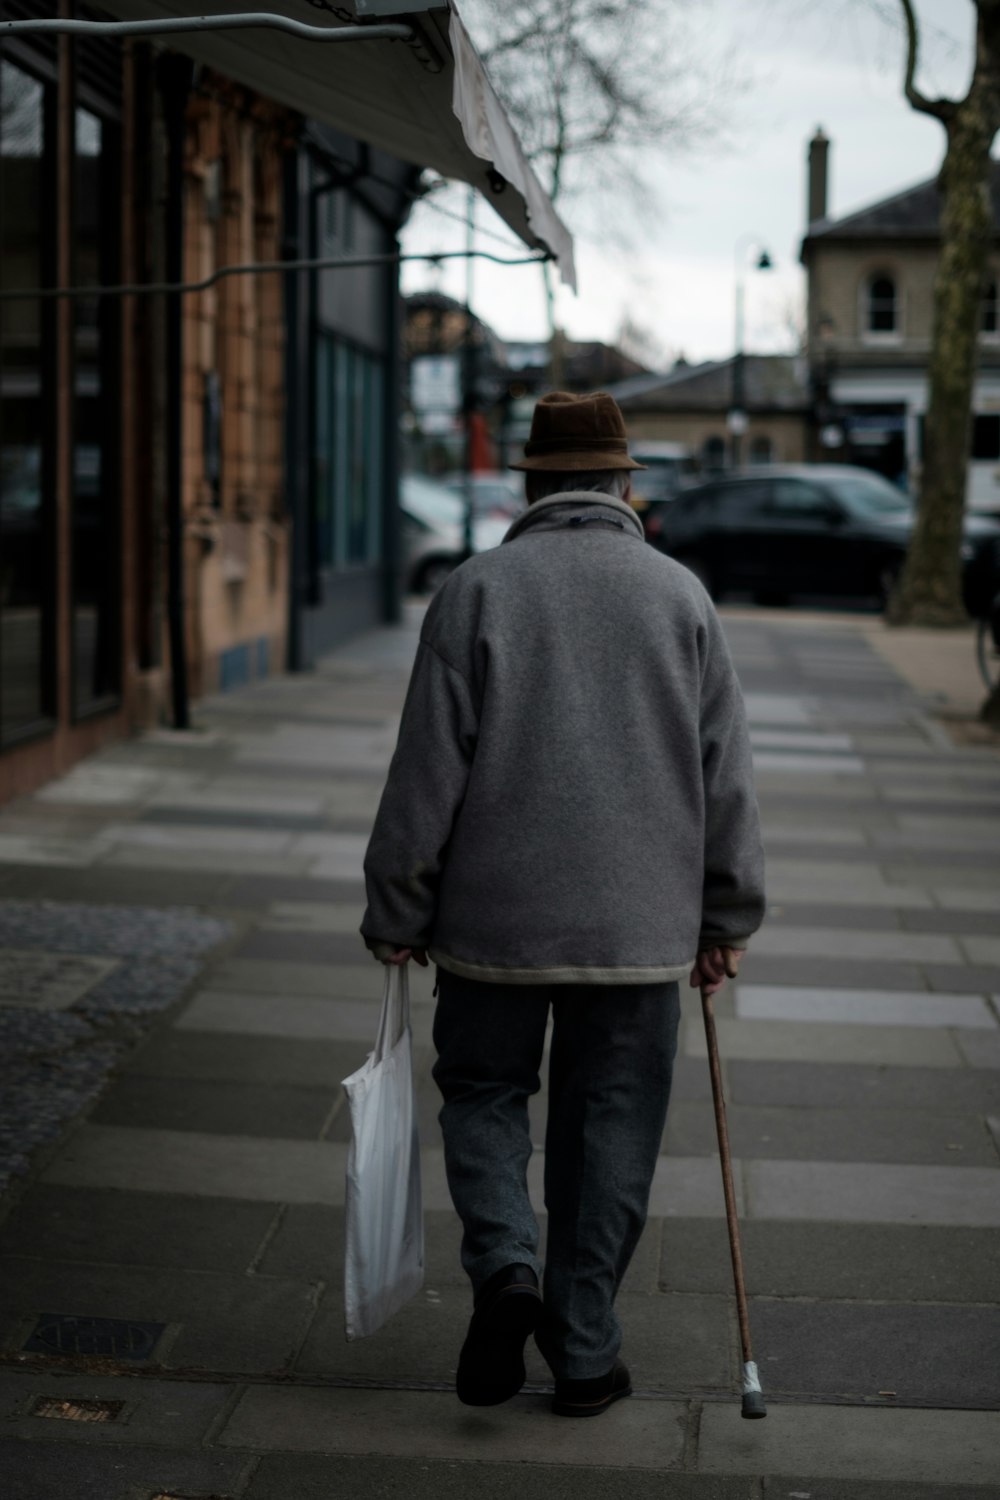 Mann geht mit braunem Stock und trägt tagsüber eine weiße Tasche in der Nähe von braunen Gebäuden